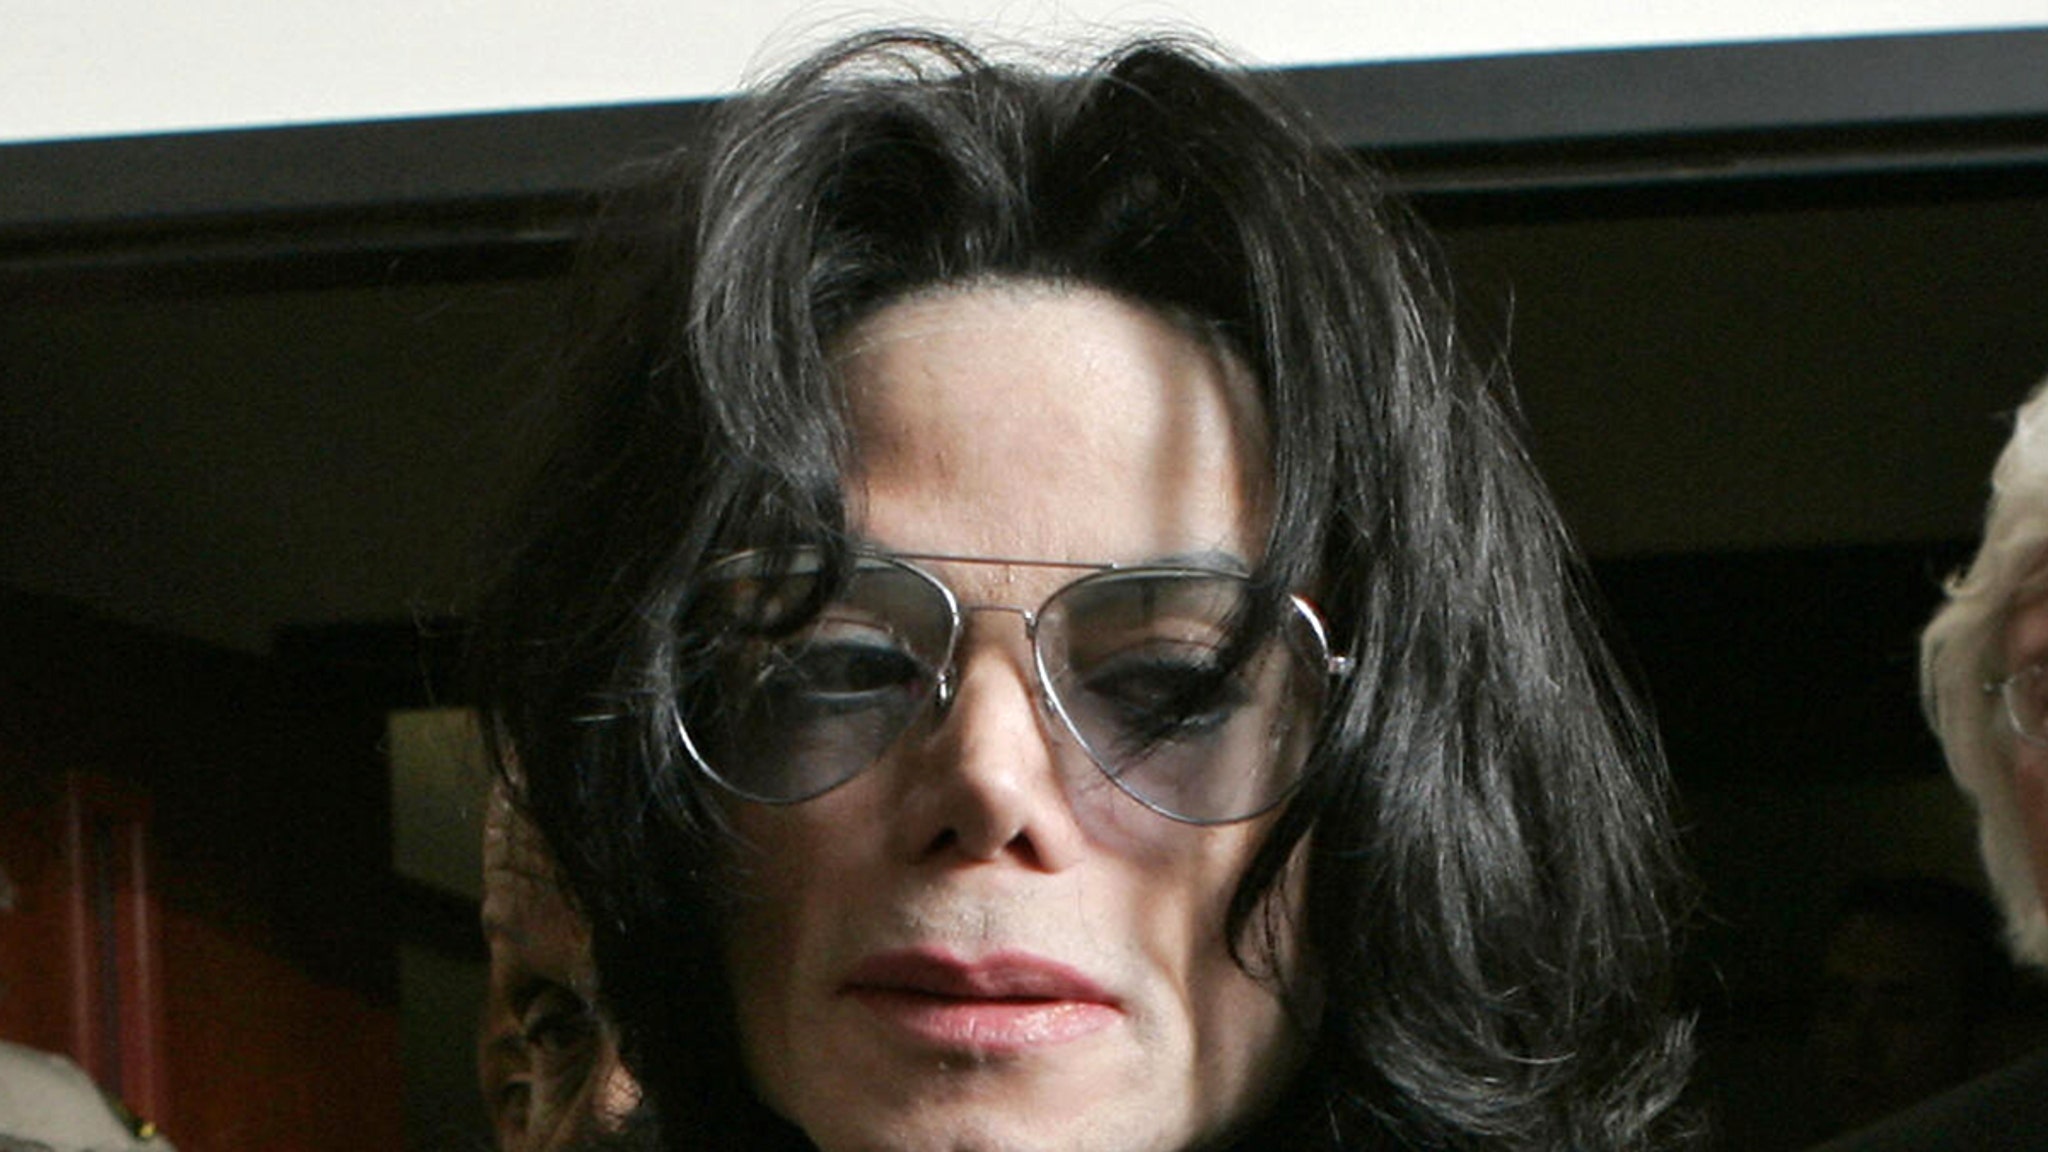 Espólio de Michael Jackson deixa de vender propriedade tirada de casa após morte